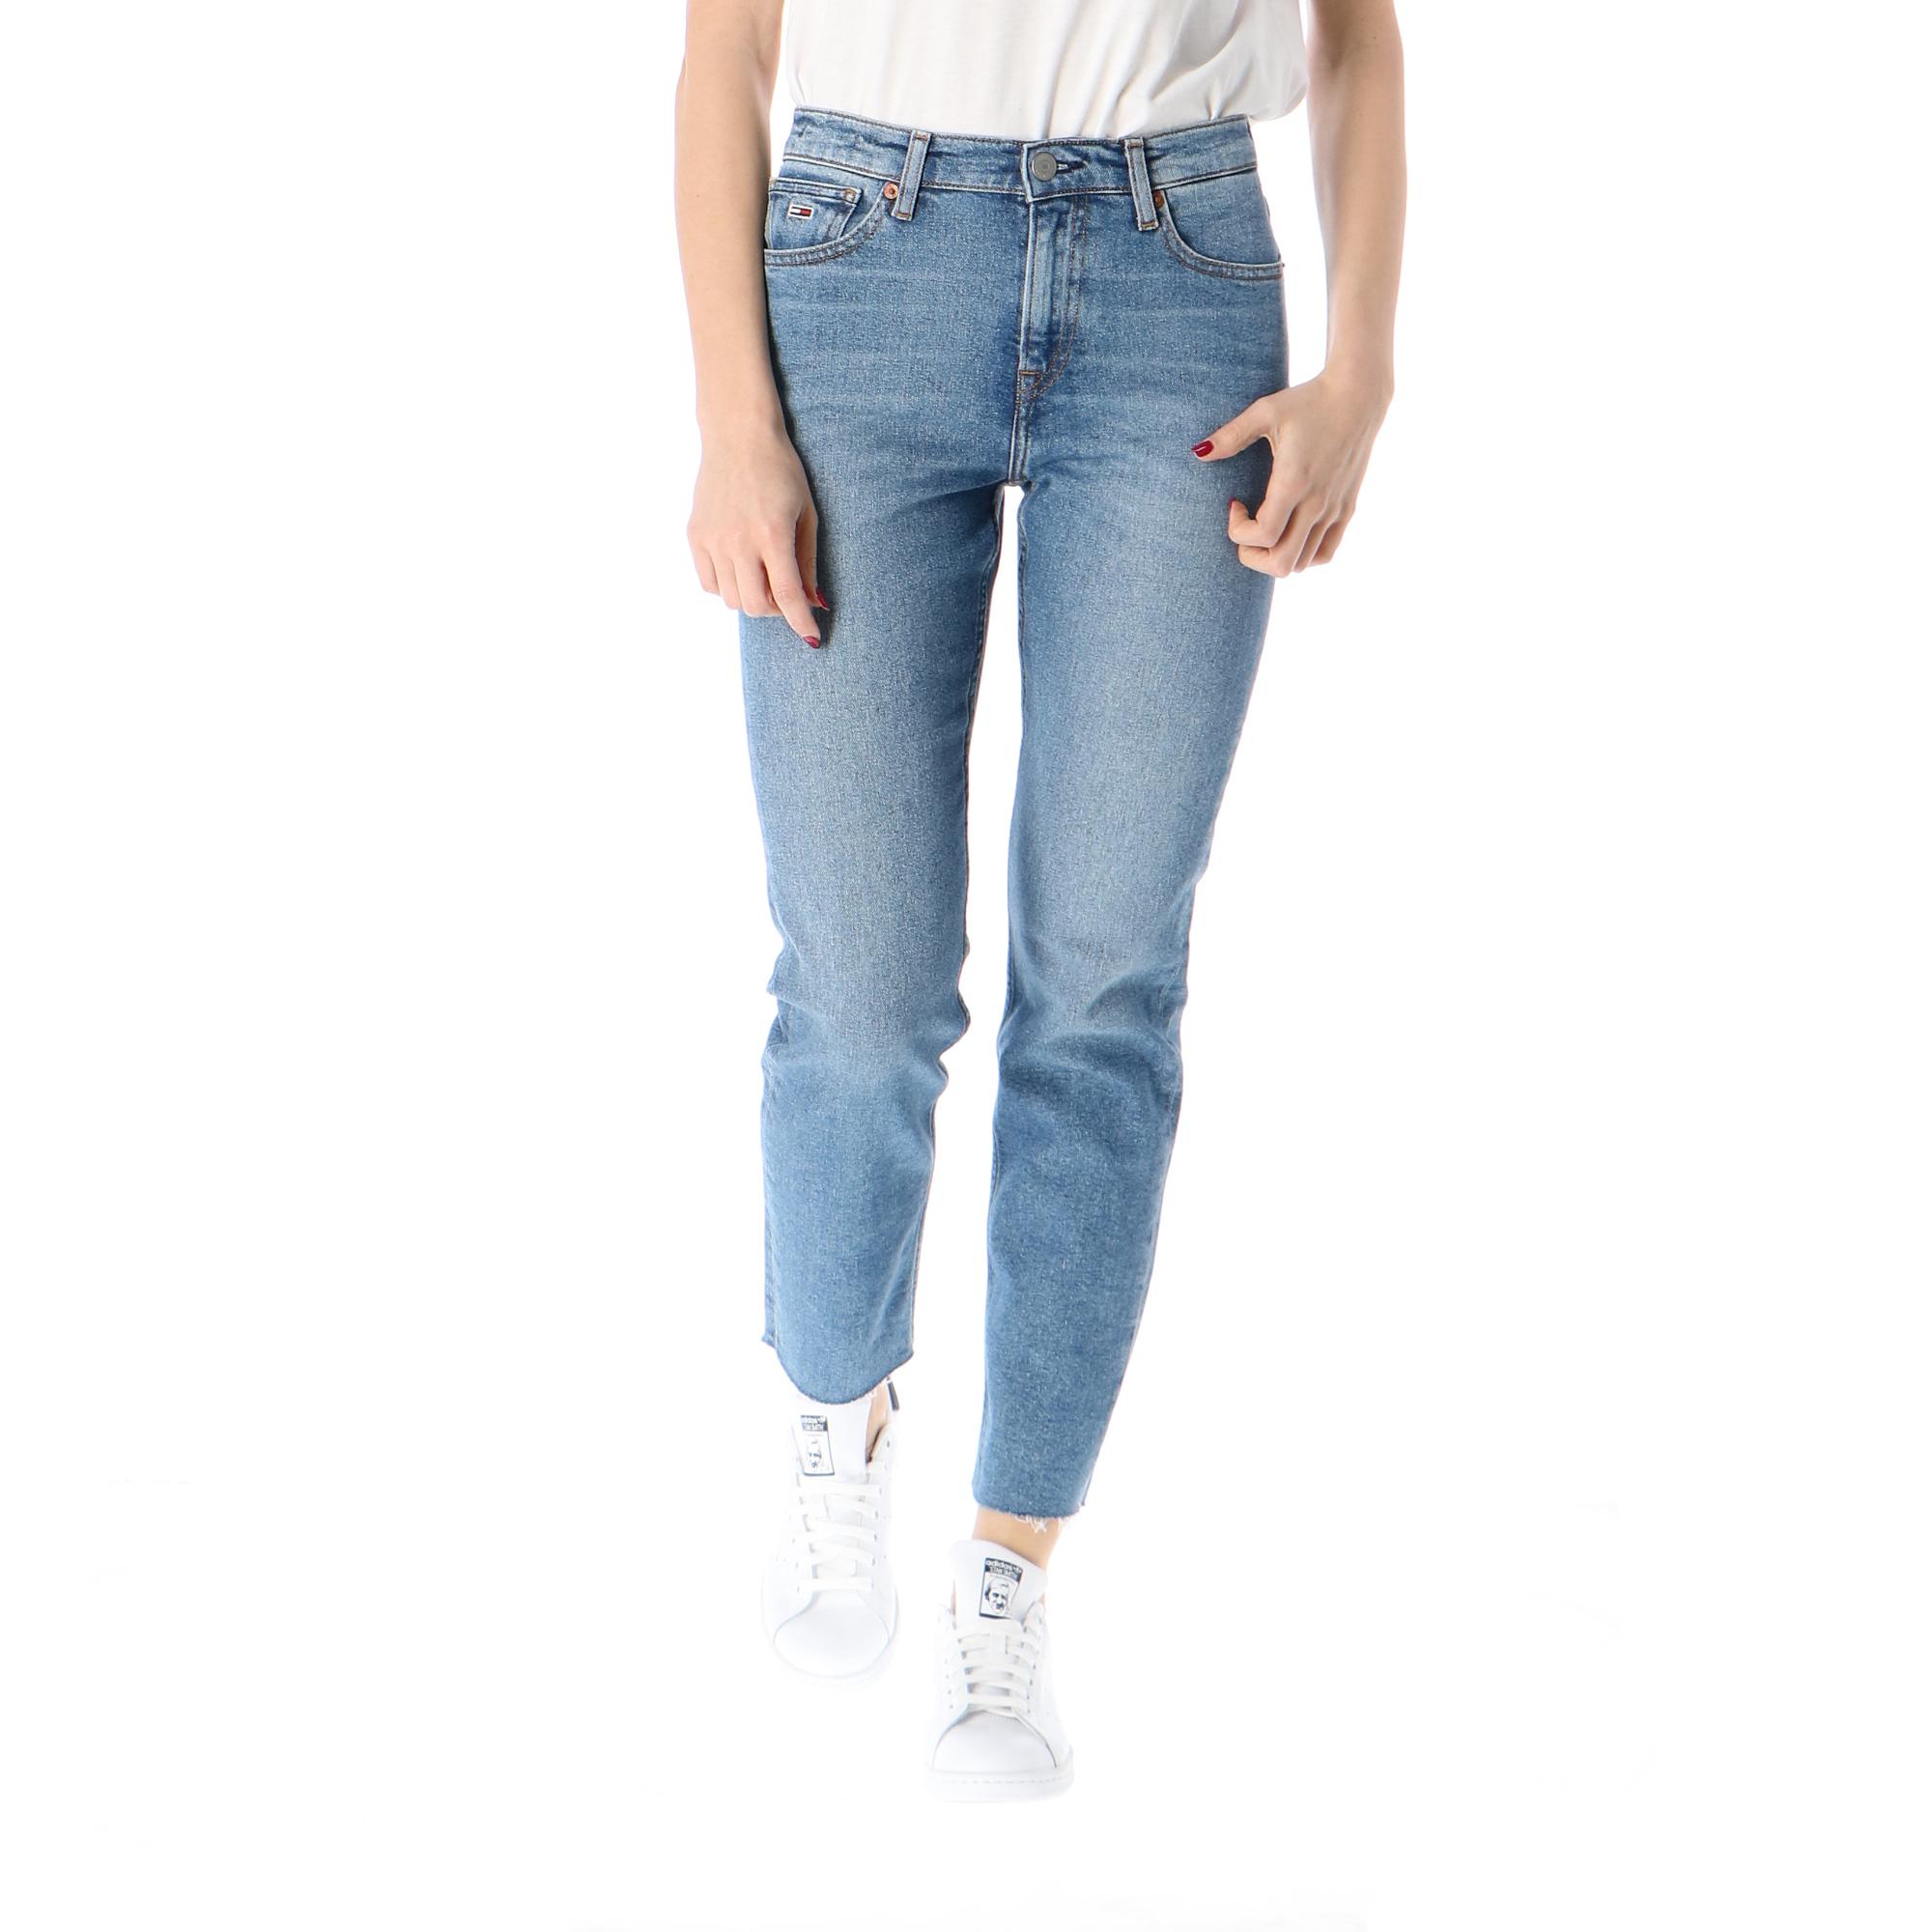 hilfiger high waist jeans